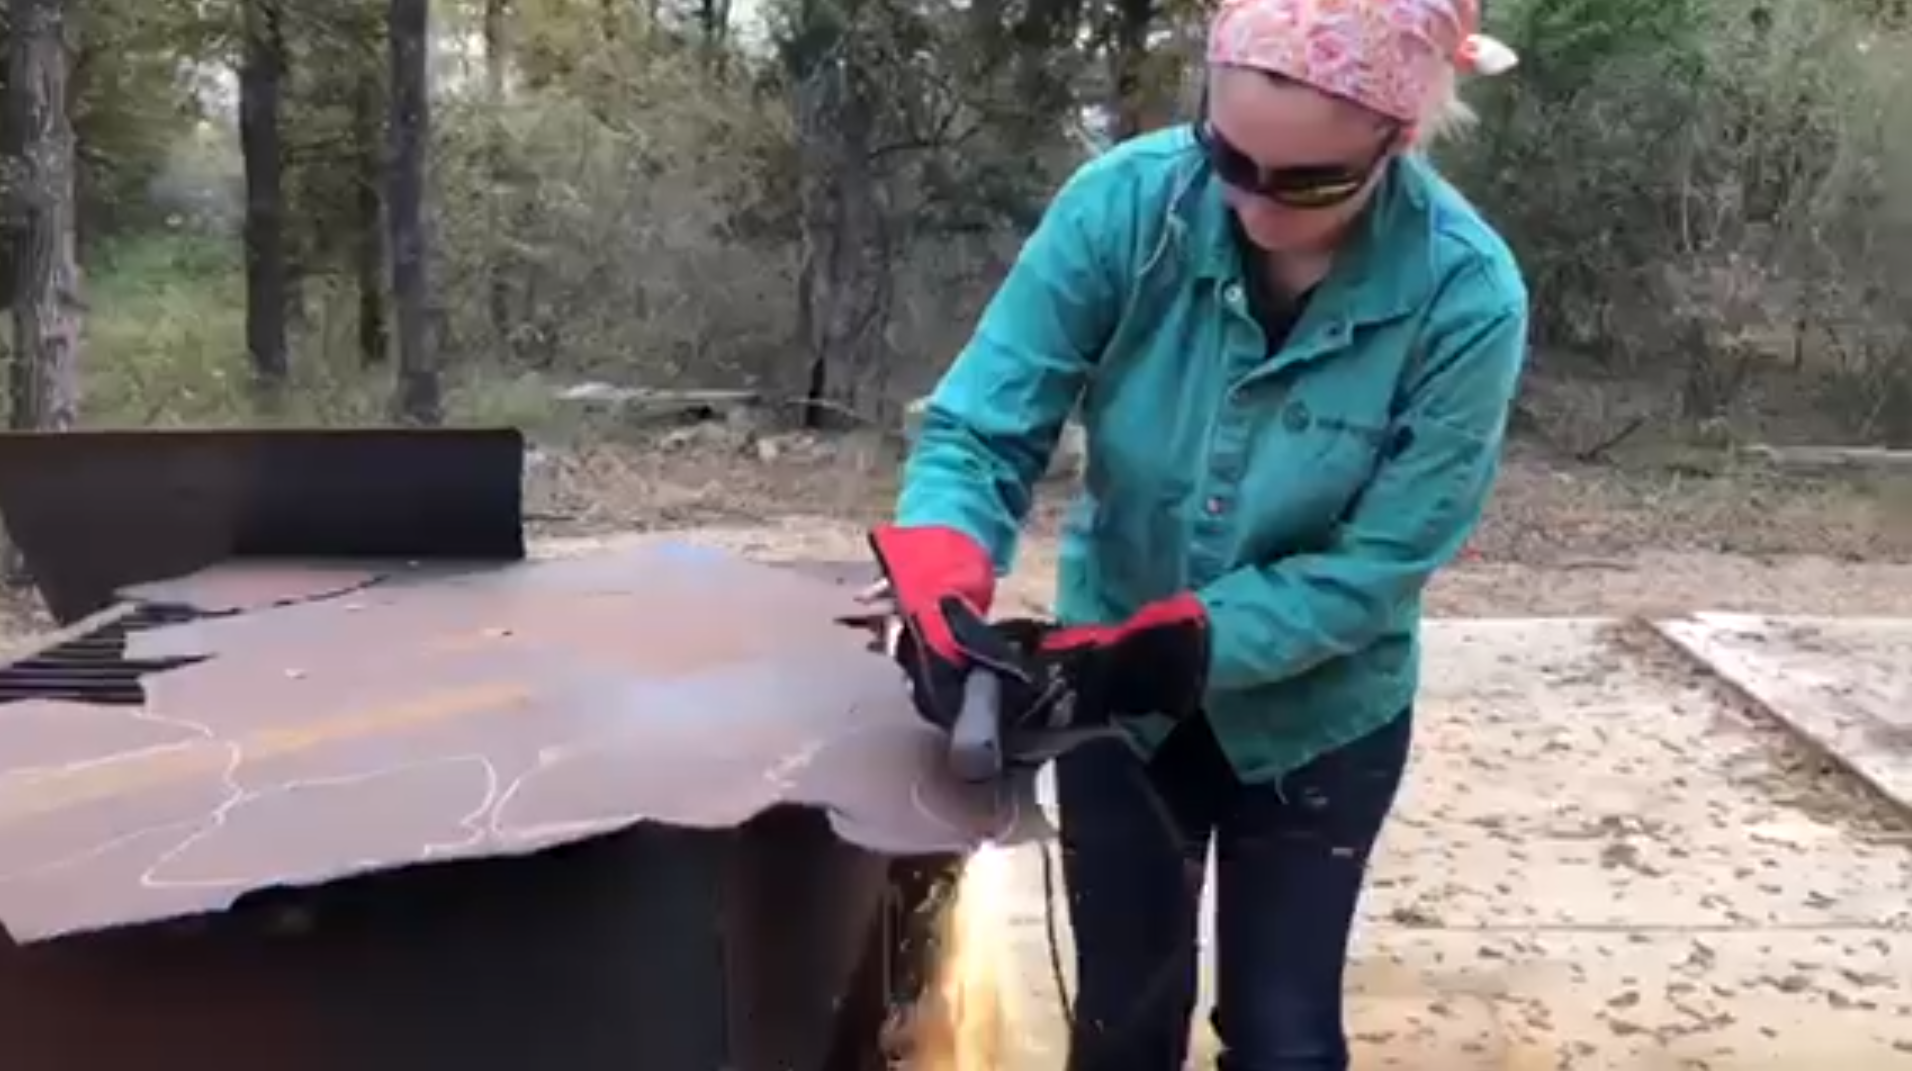 索菲亚正在焊接一块金属